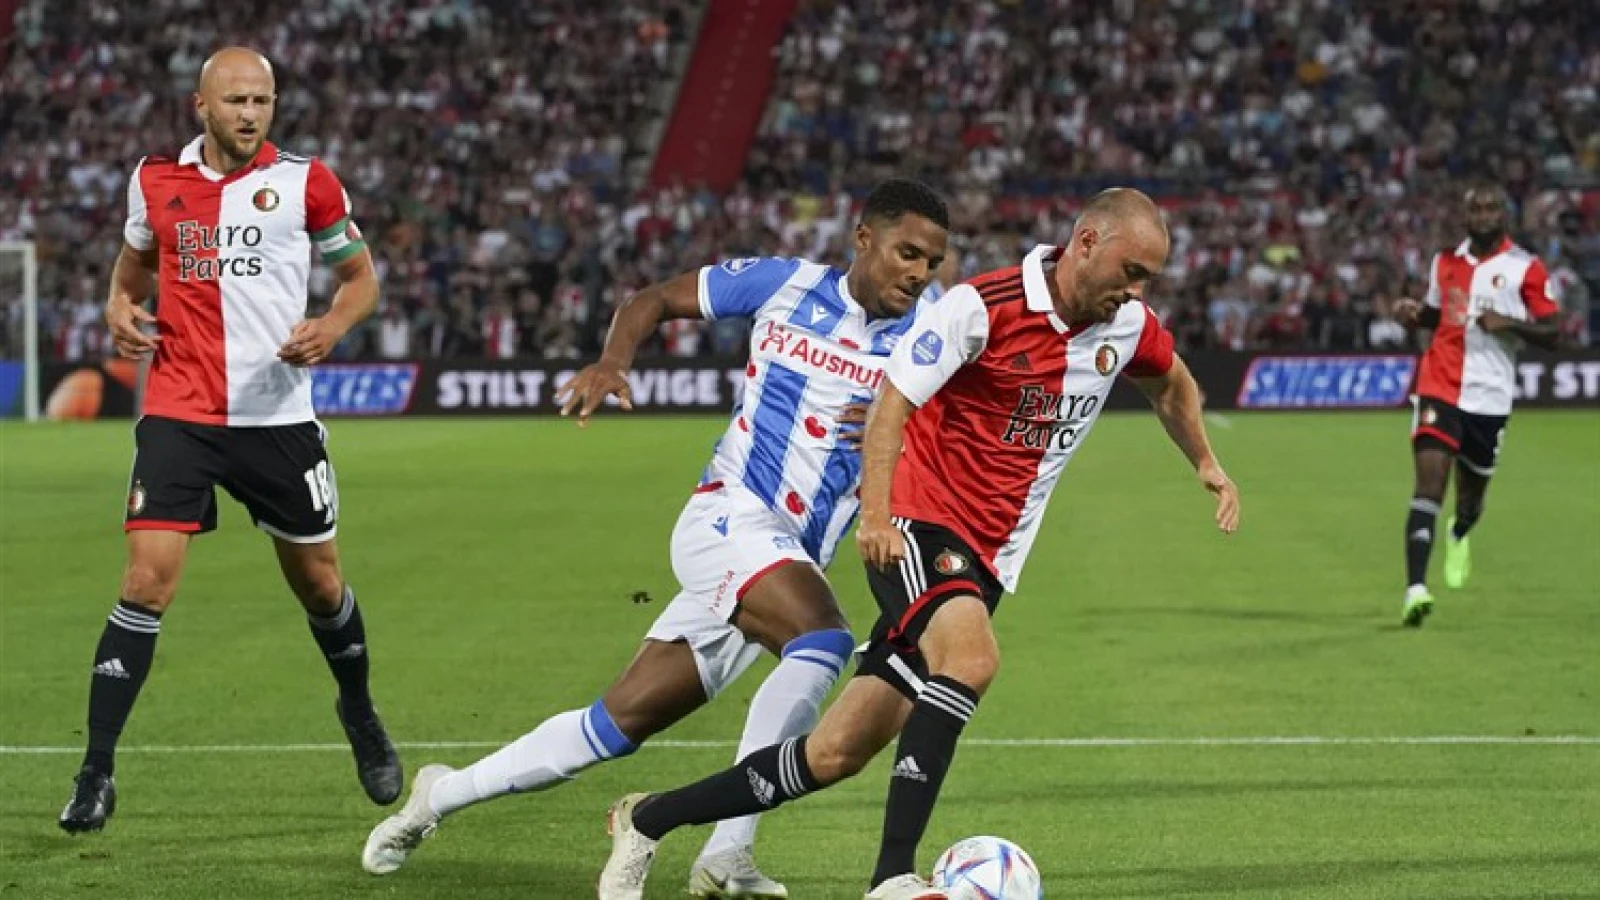 Feyenoord speelt in eigen Kuip gelijk tegen sc Heerenveen